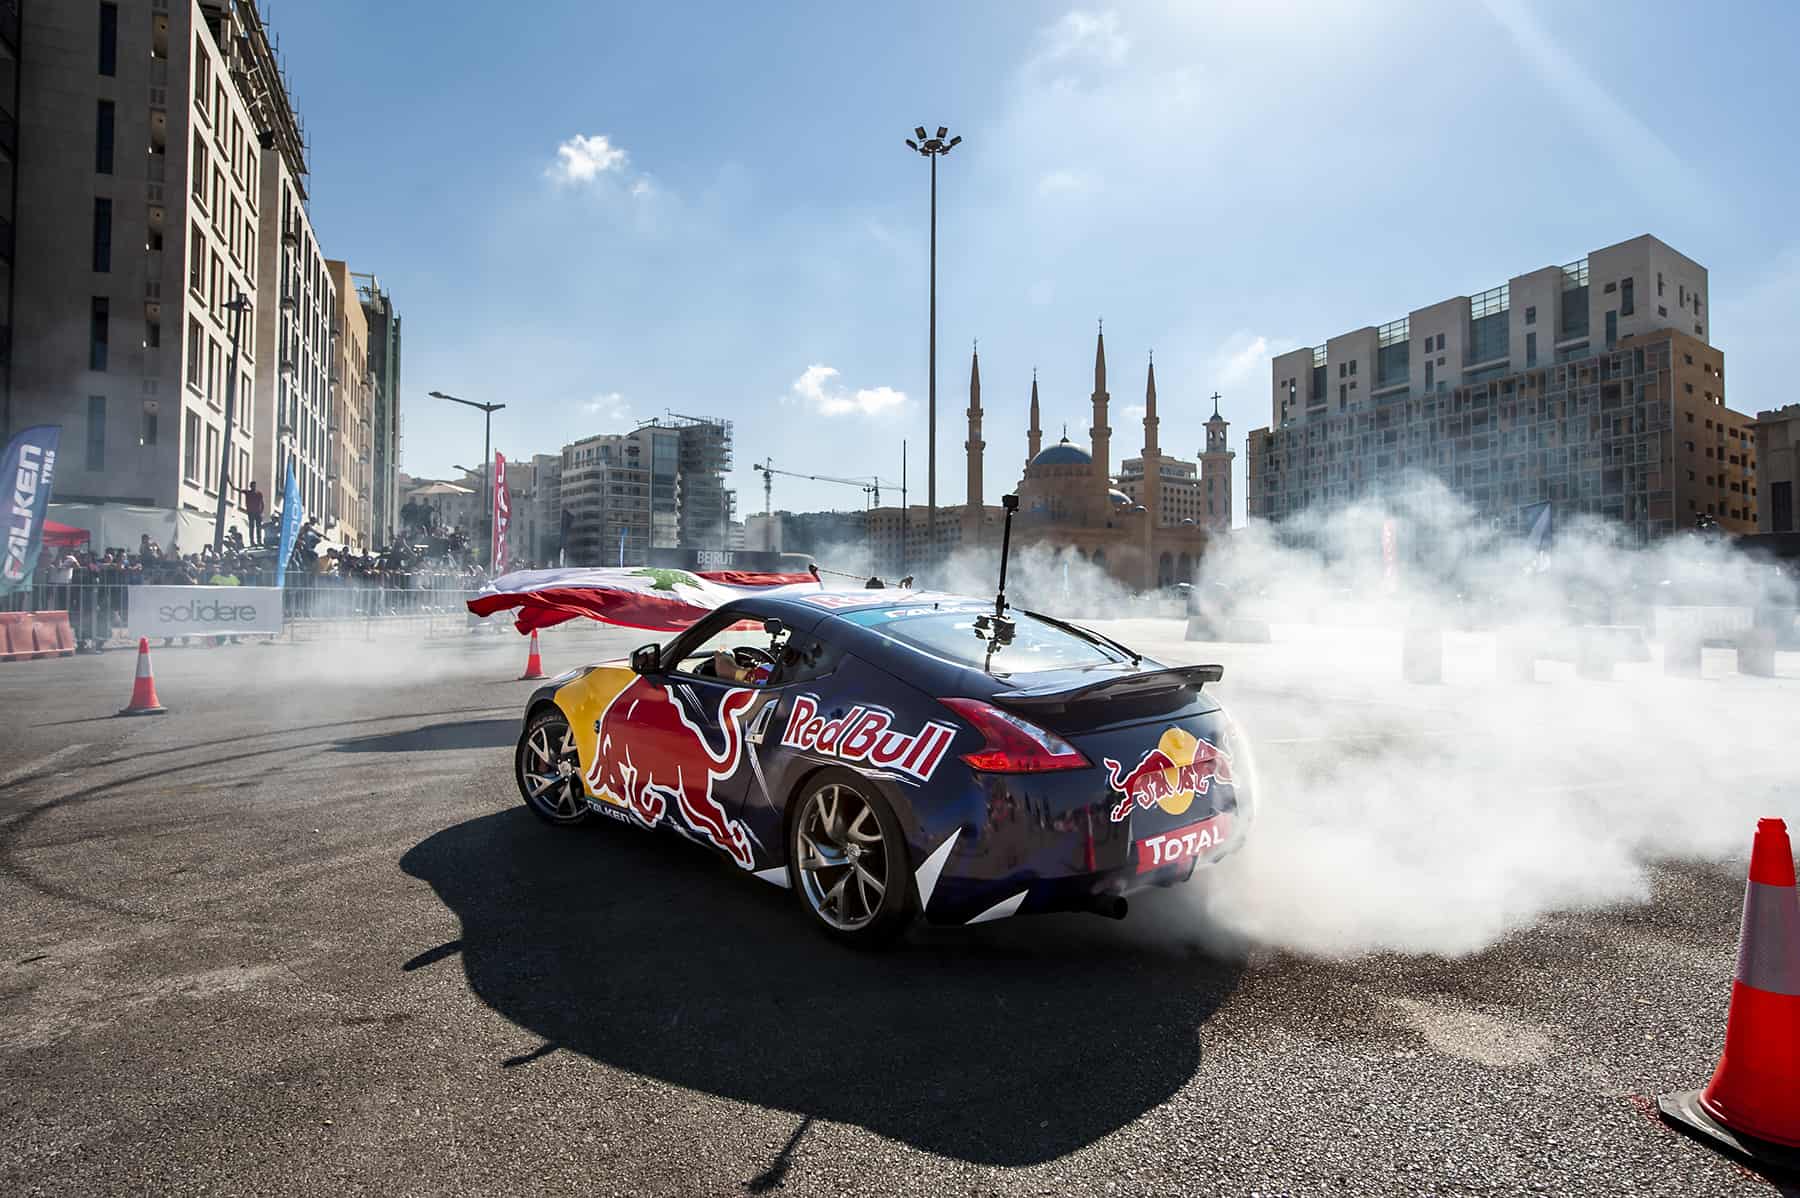 Red Bull Car Park Drift Regional Final weekend in Beirut